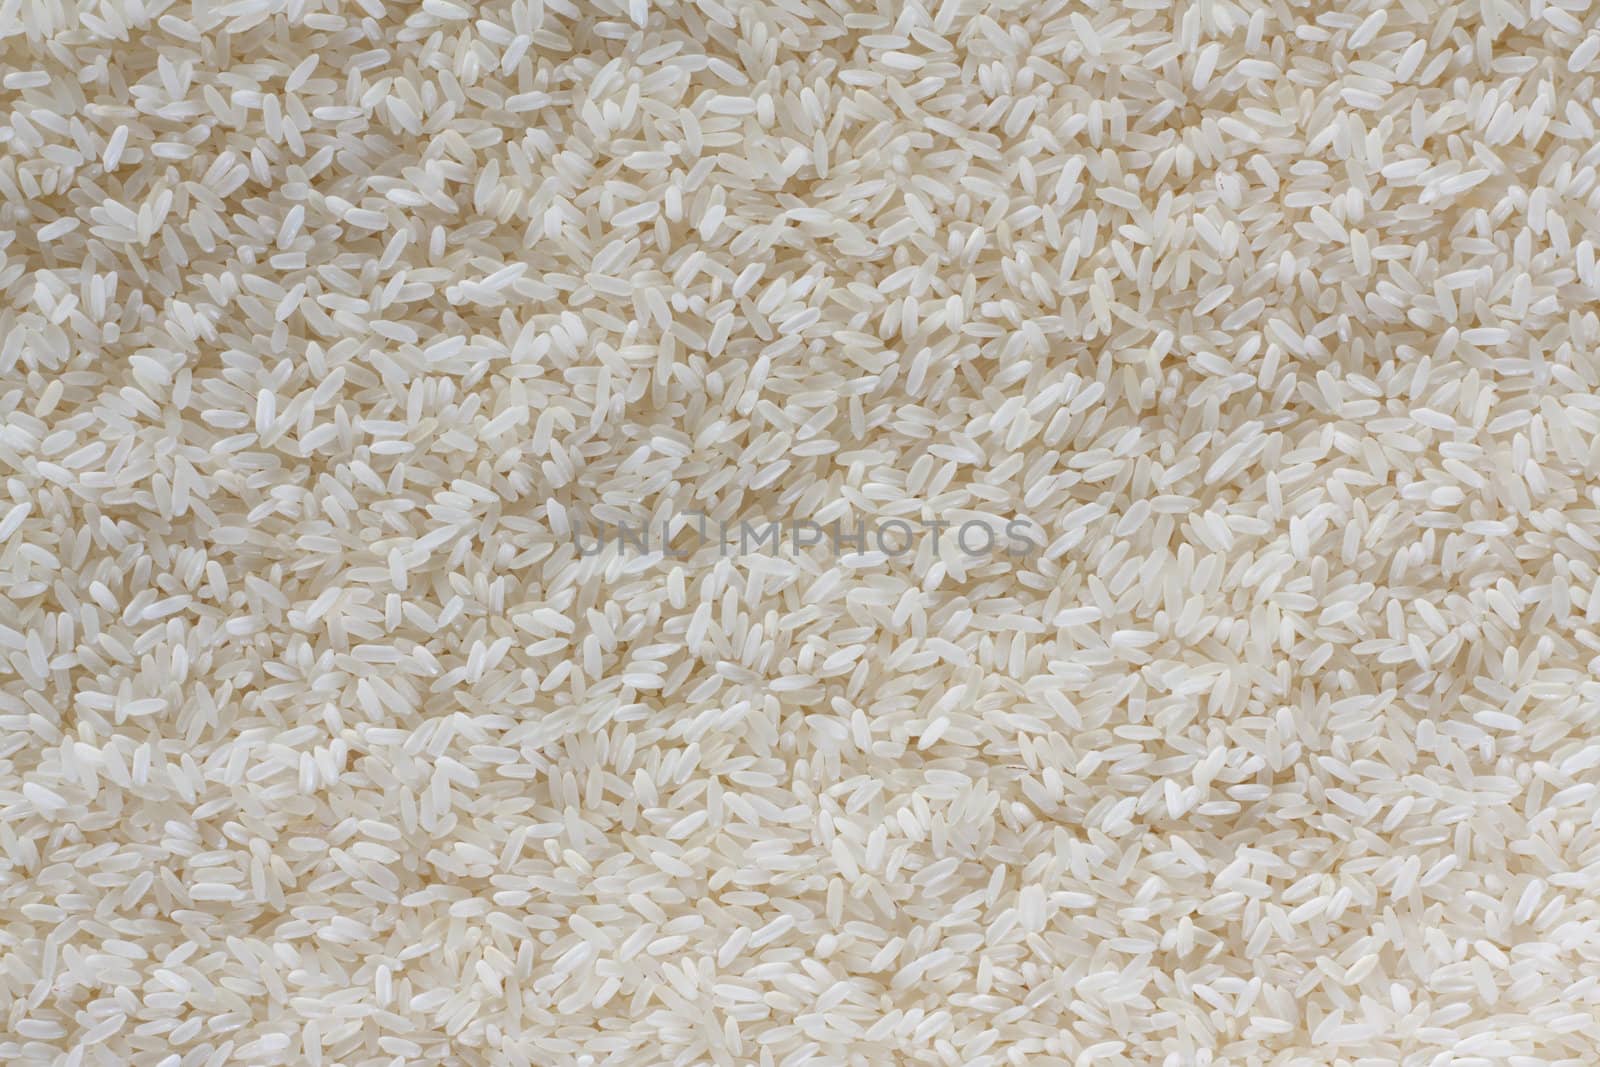 texture of rice closeup